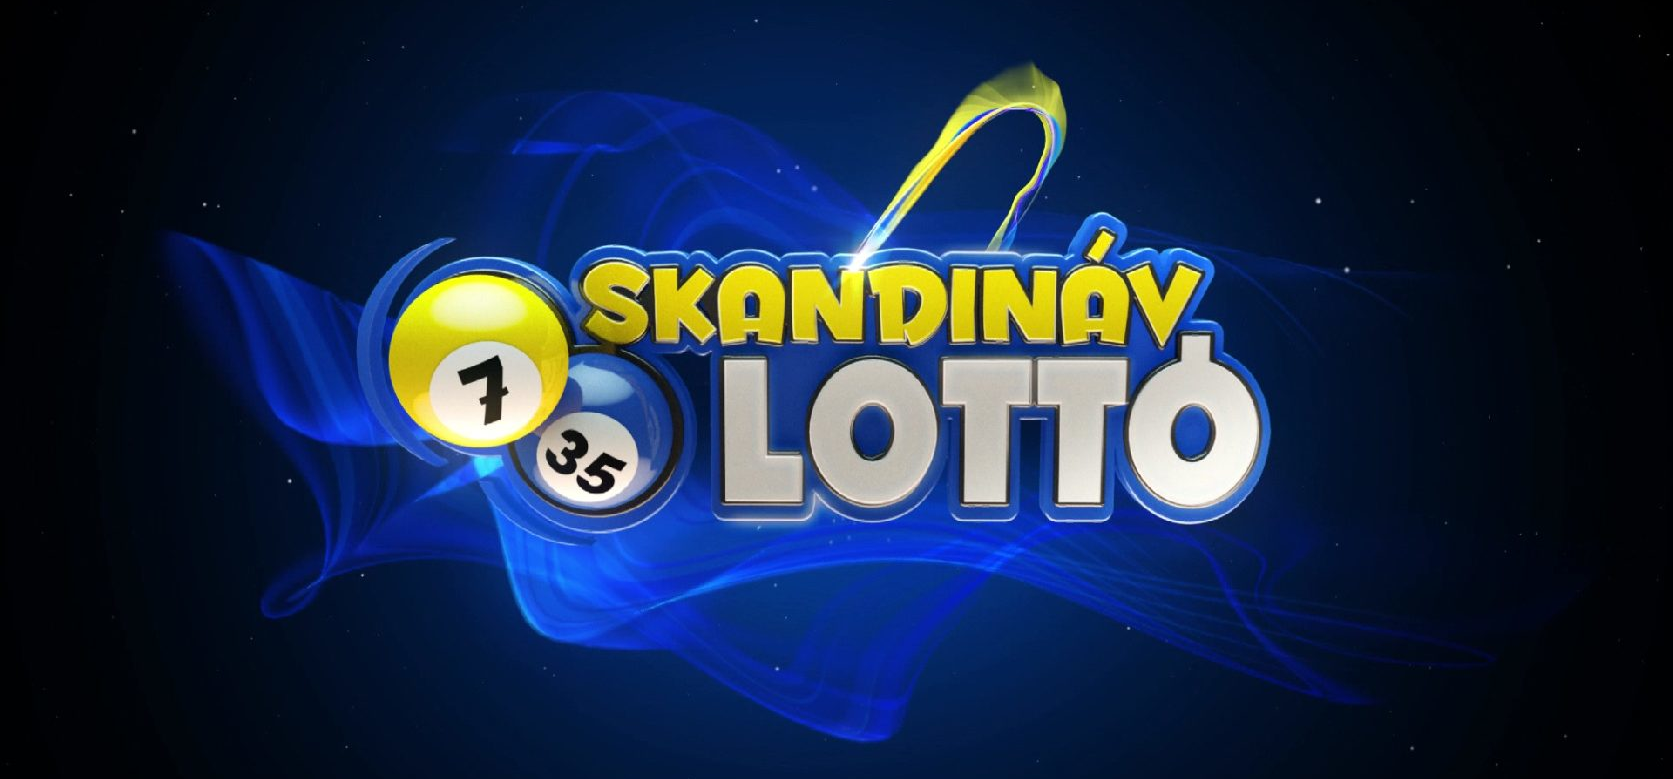 Skandináv lottó: 110 millió forinttal lett gazdagabb, aki eltalálta ezeket a nyerőszámokat